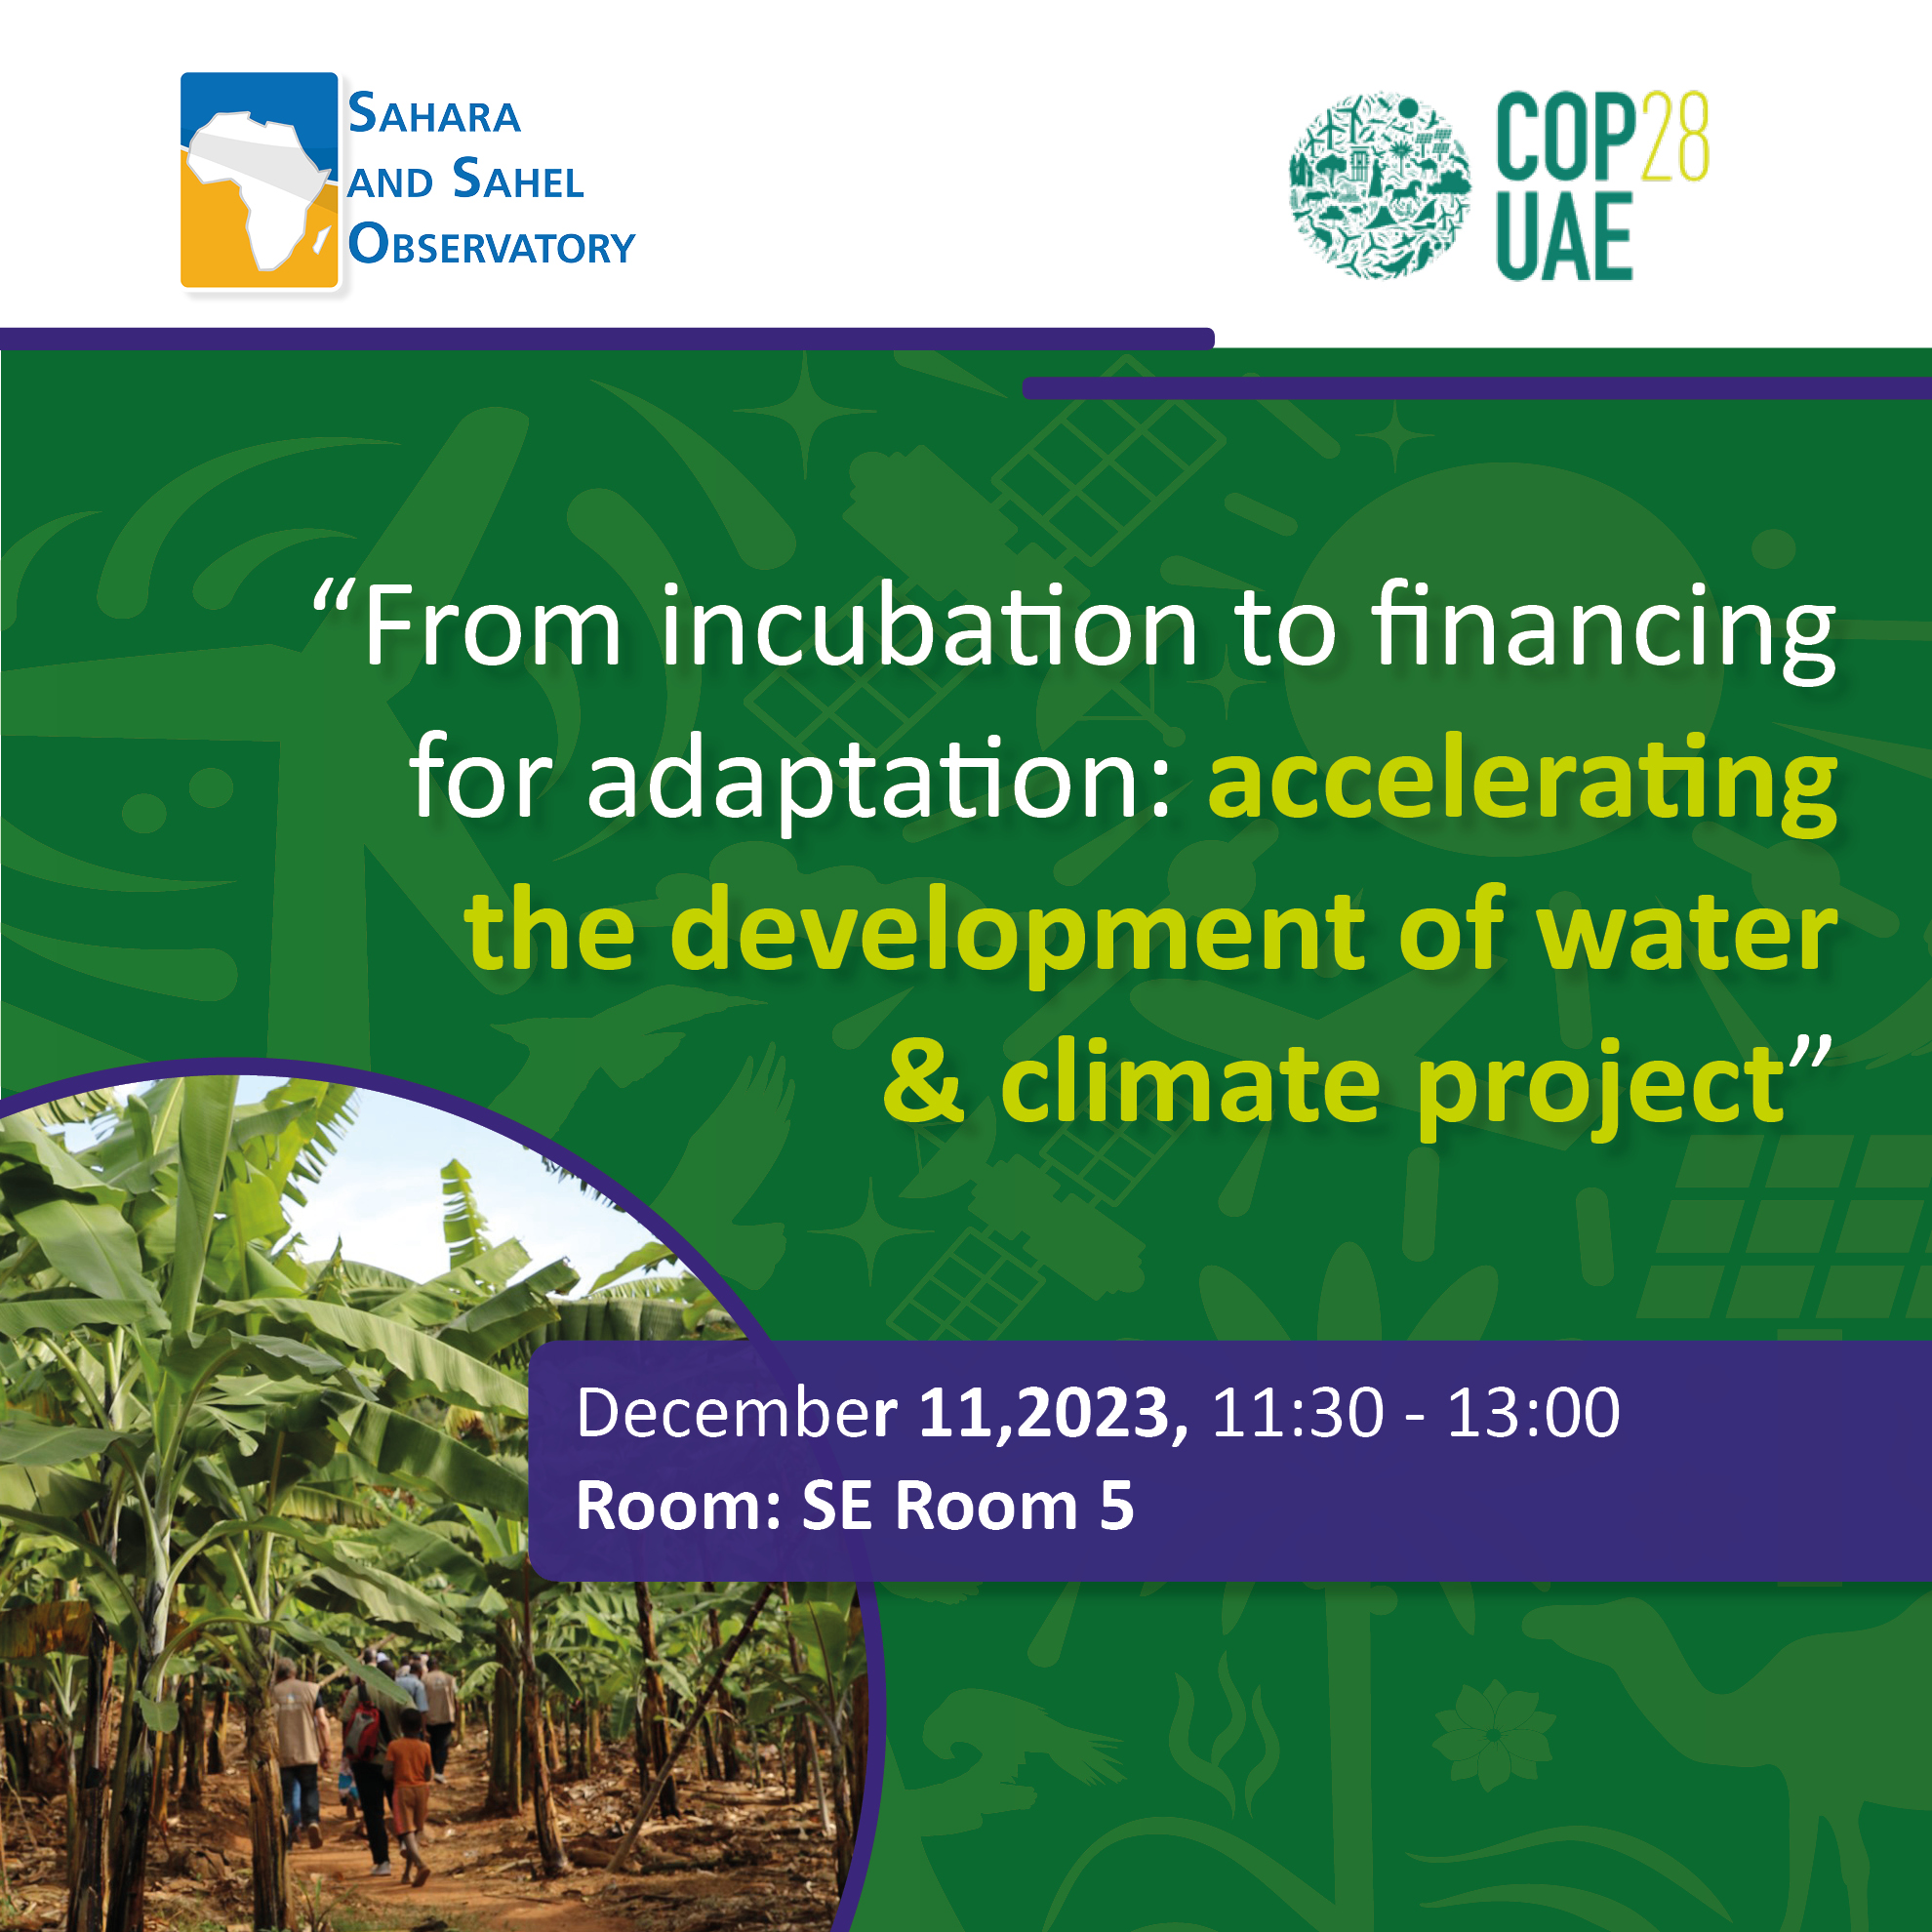  COP28UAE - "De l’incubation au financement de l’adaptation : accélérer le développement des projets Eau & Climat”, le 11 décembre 2023 au: SE Room 5